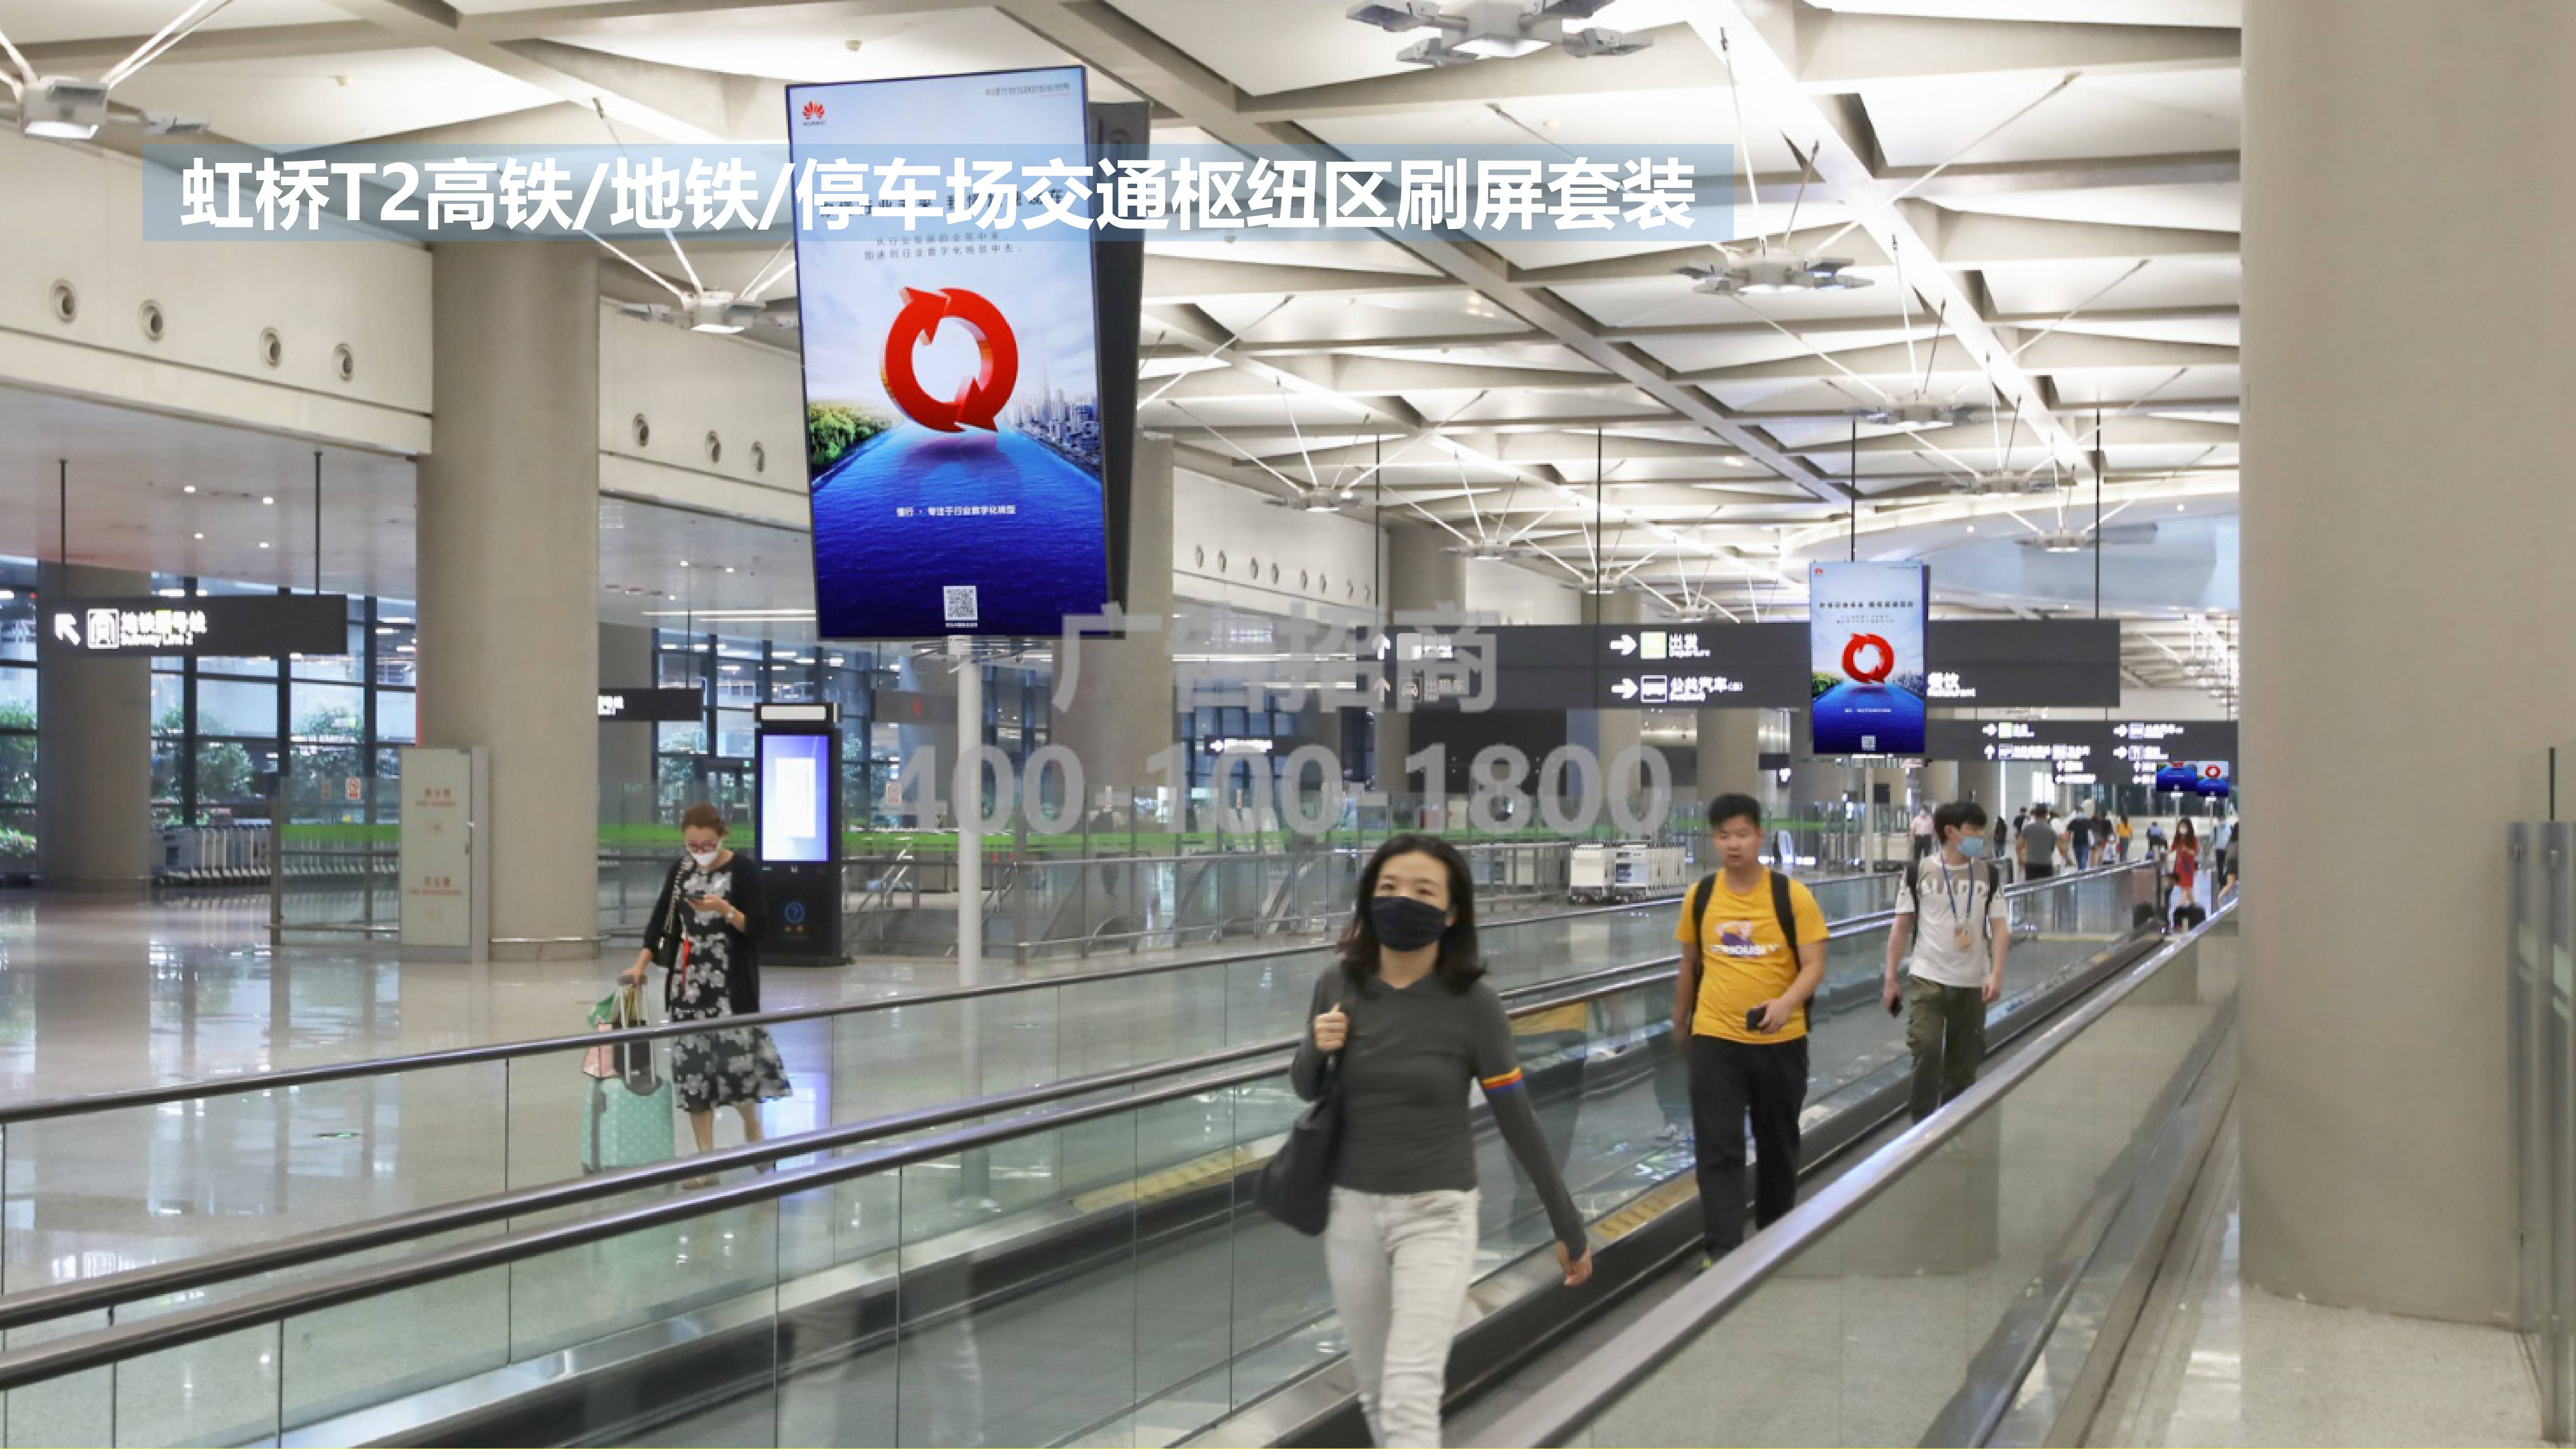 上海虹桥机场t2高铁/地铁/停车场gtc交通枢纽区刷屏广告